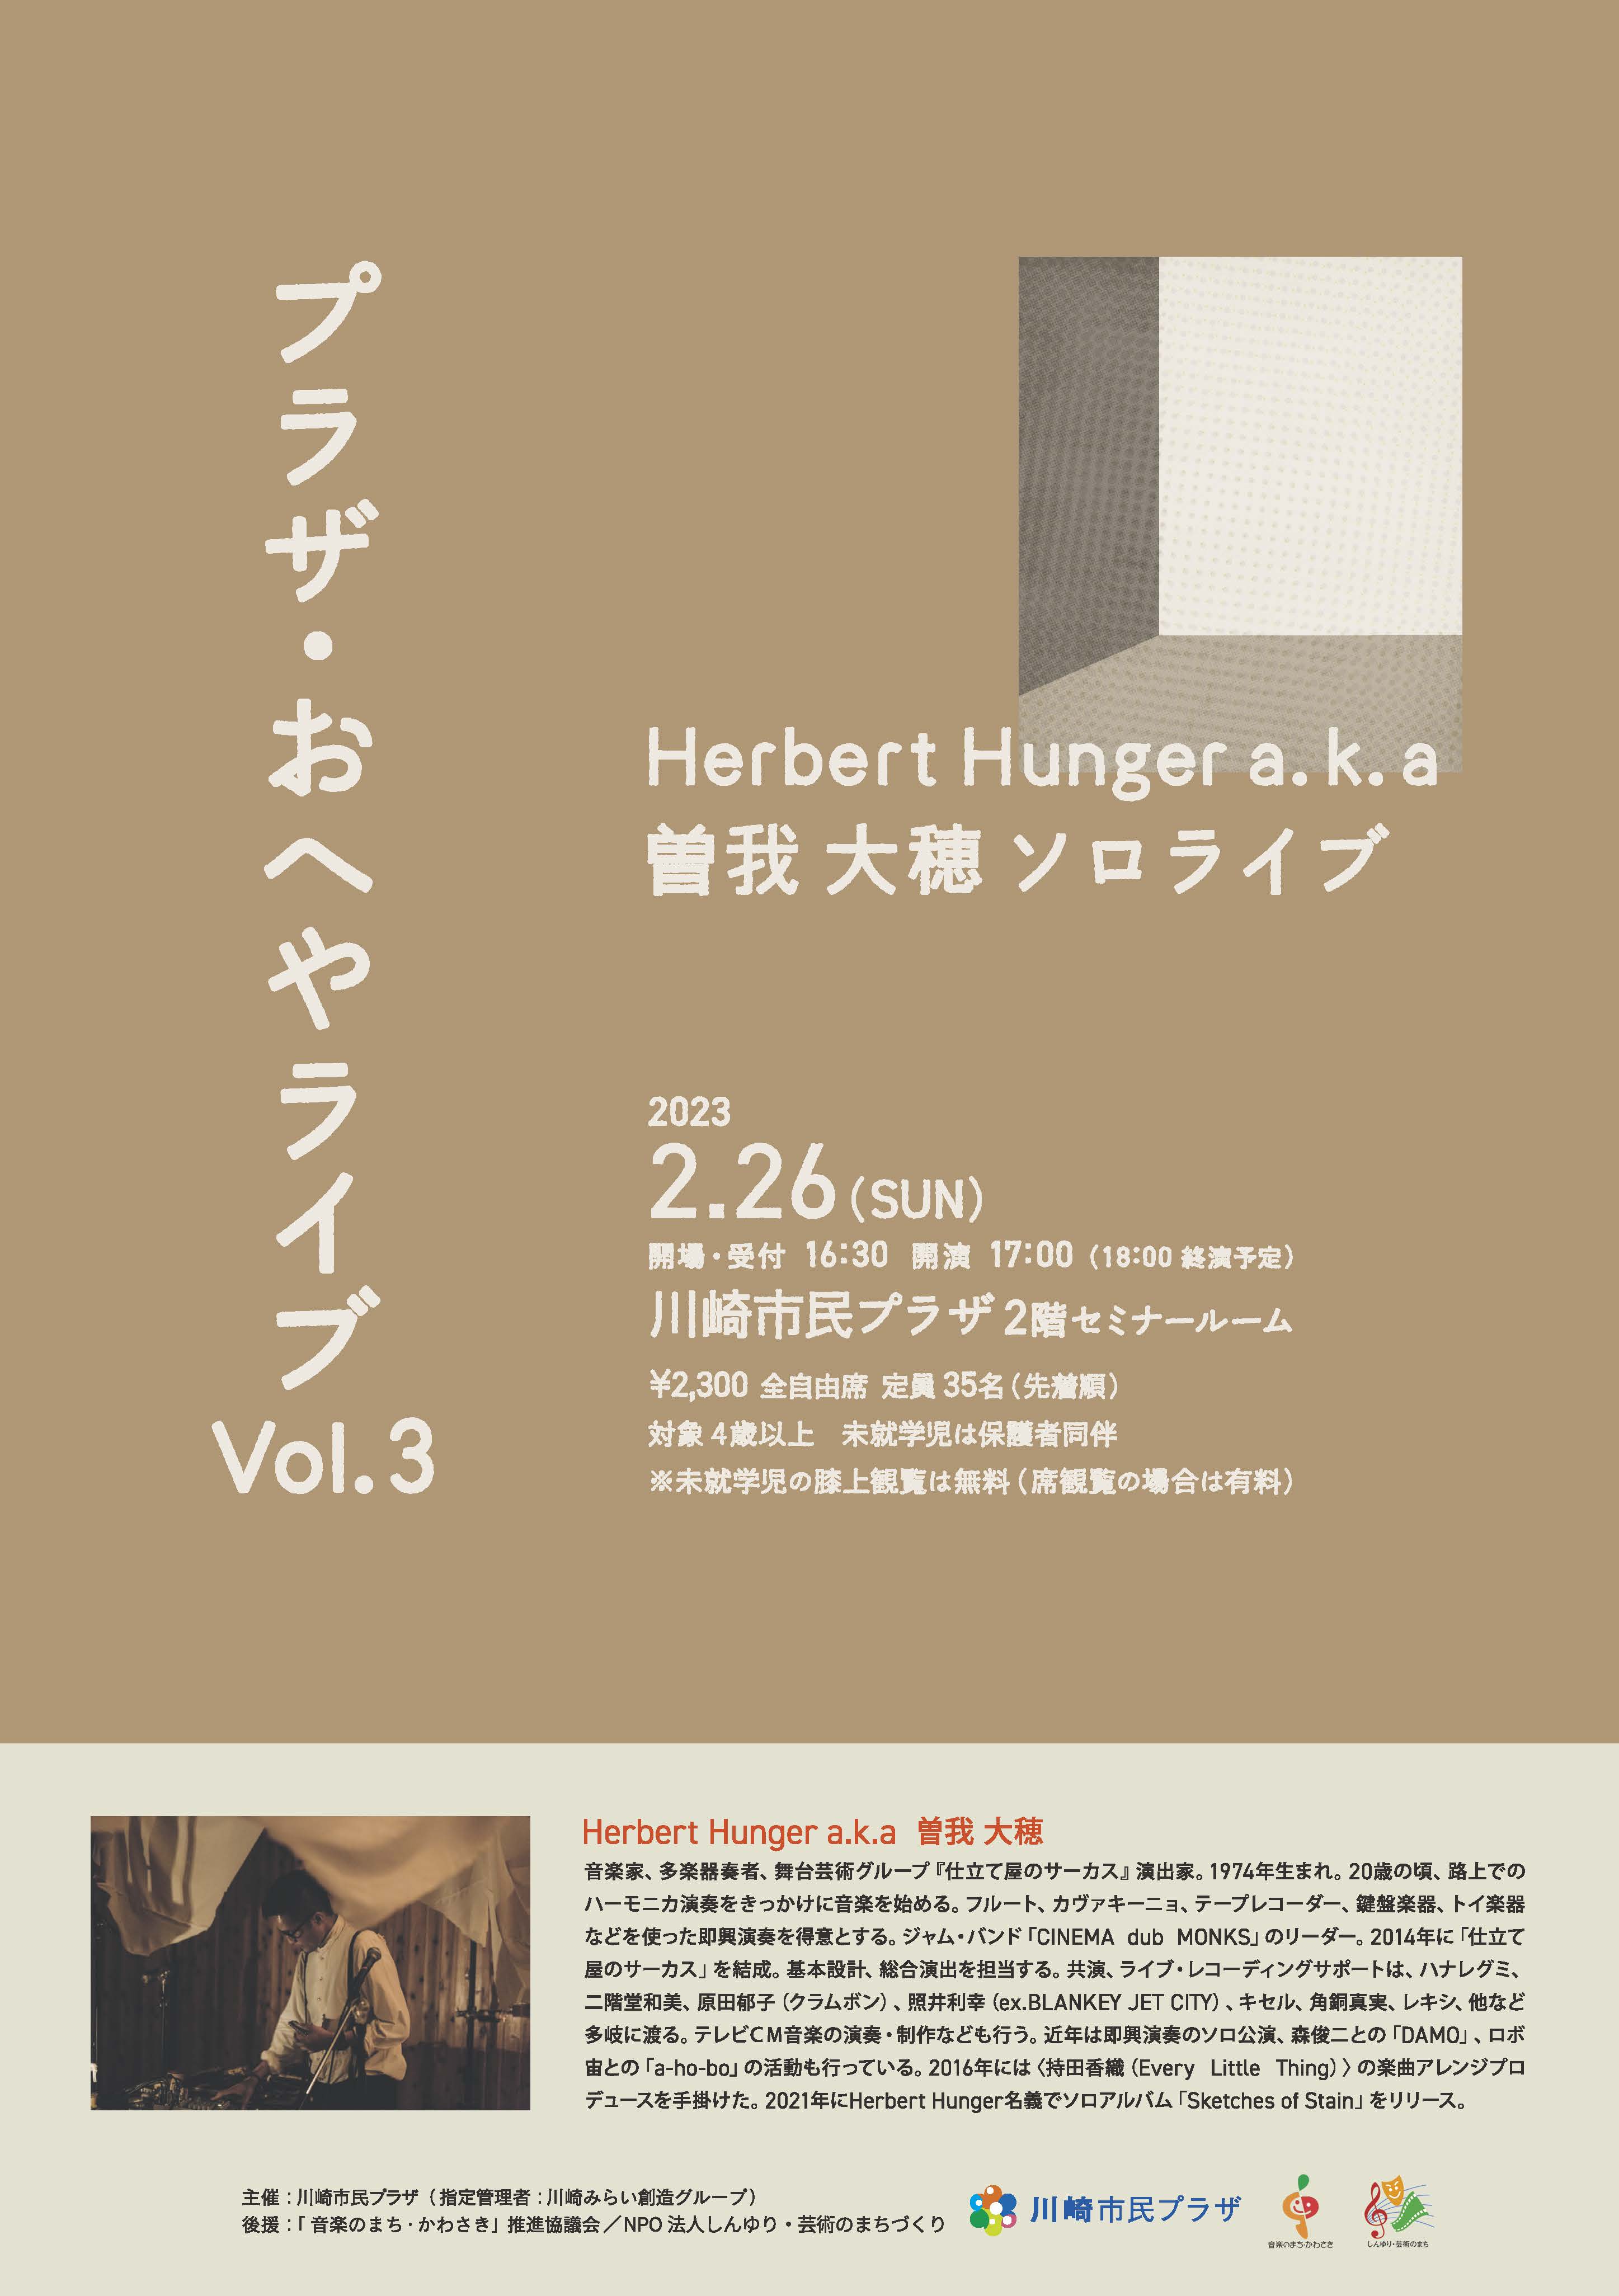 【2023年2月26日】プラザ・おへやライブ Vol.3 ~Herbert Hunger a.k.a曽我大穂 ソロライブ~（1/4受付開始！）